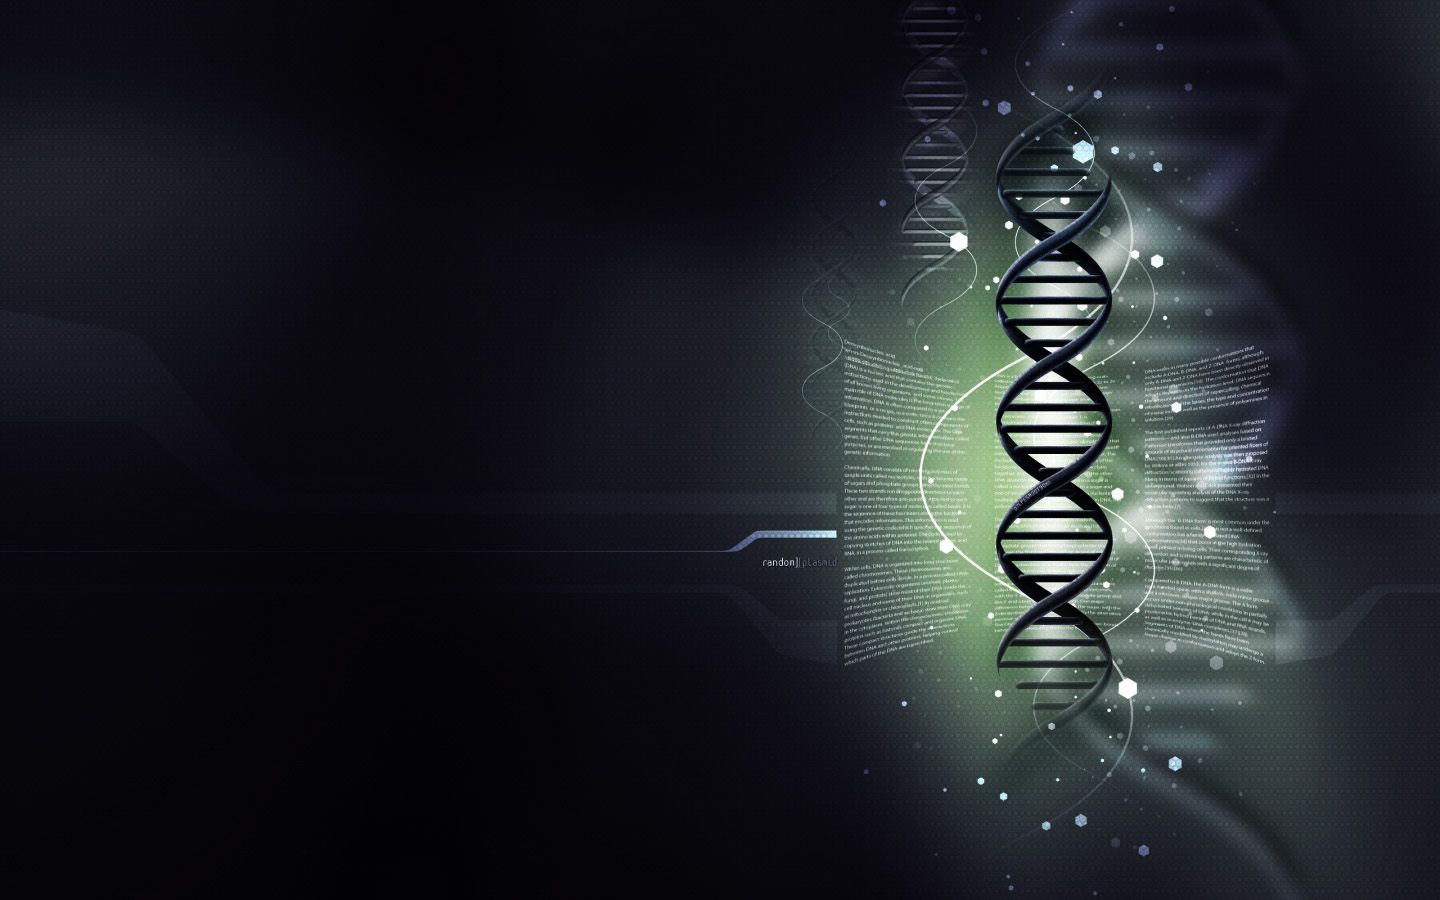 3D DNA Wallpaper - HD Images New